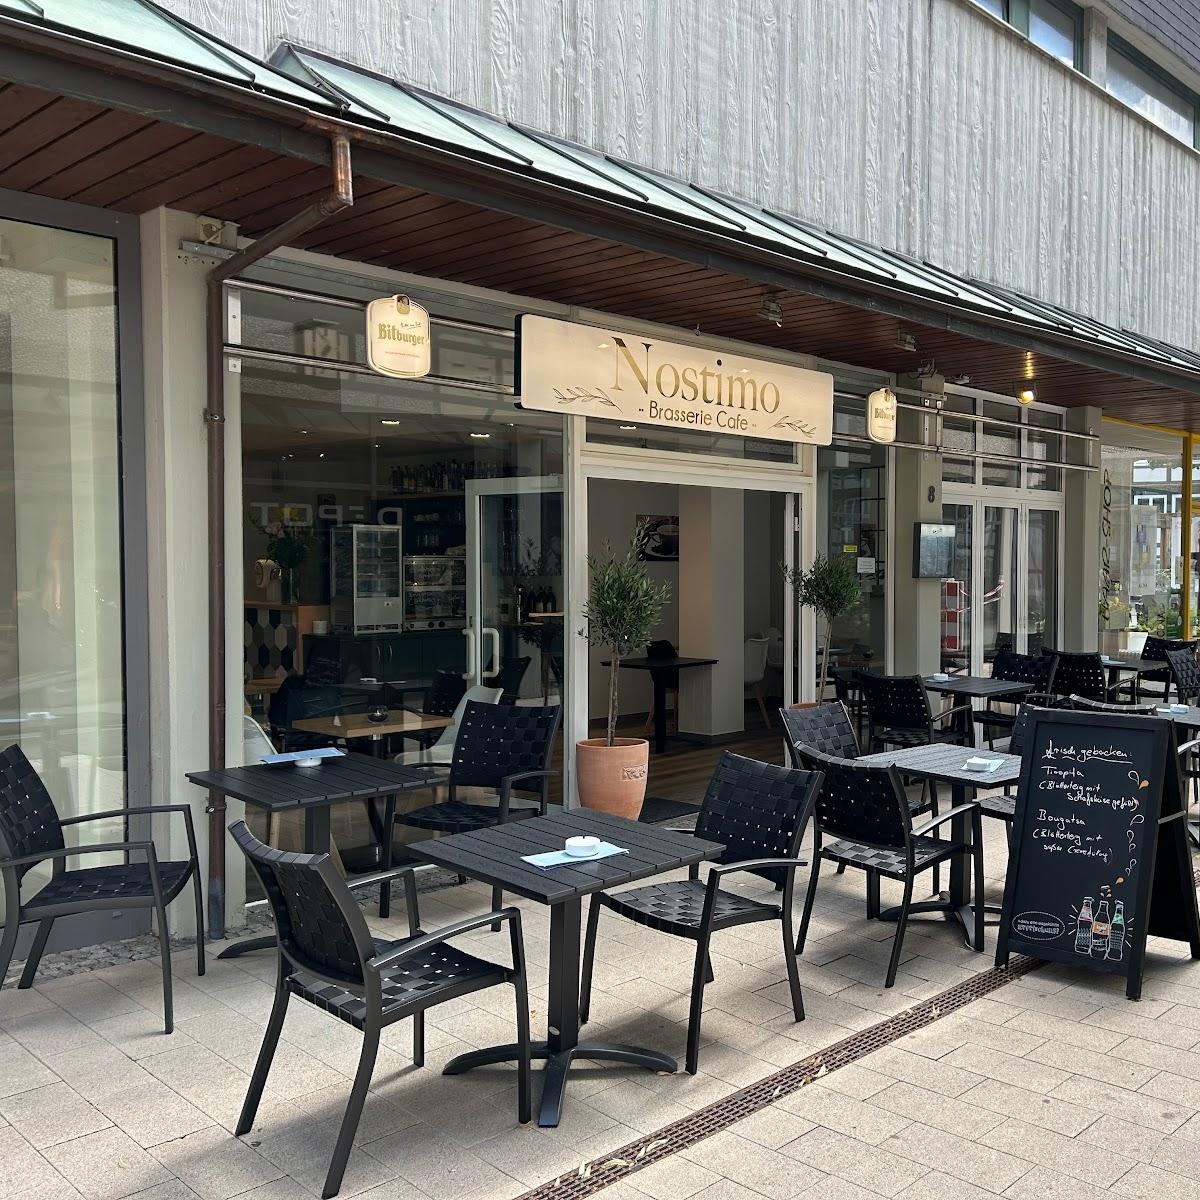 Restaurant "Nostimo Brasserie griechische Küche" in Höxter